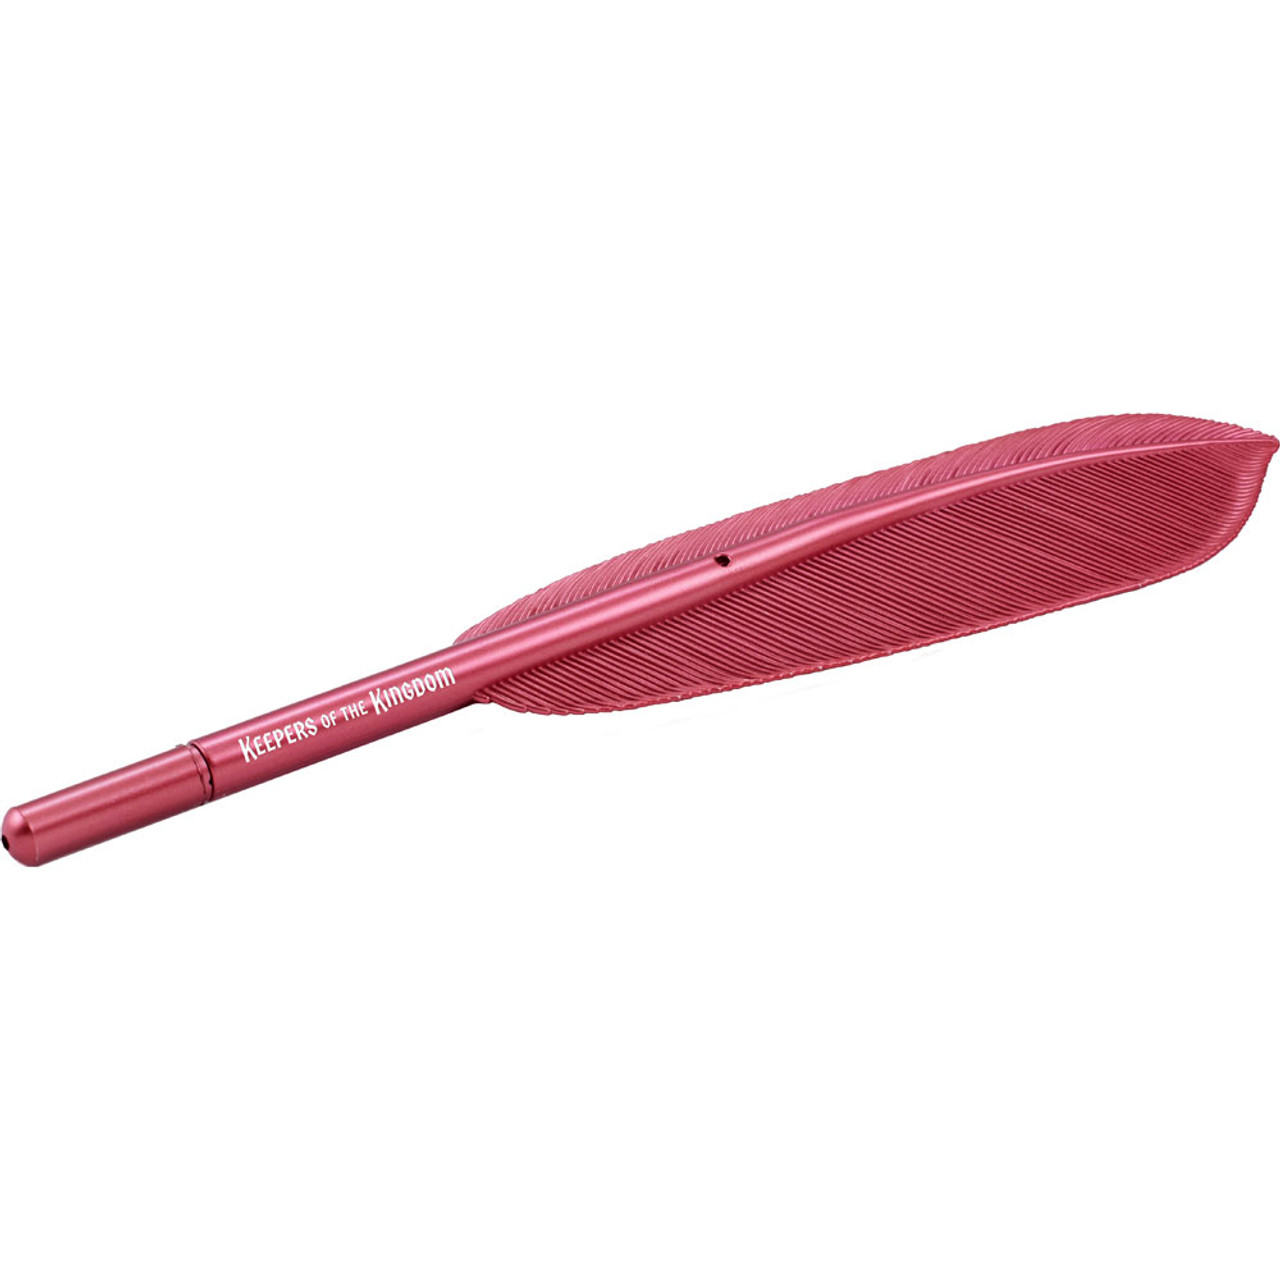 Pink Turkey Feather Quill Pen – Objets d'Art & Spirit